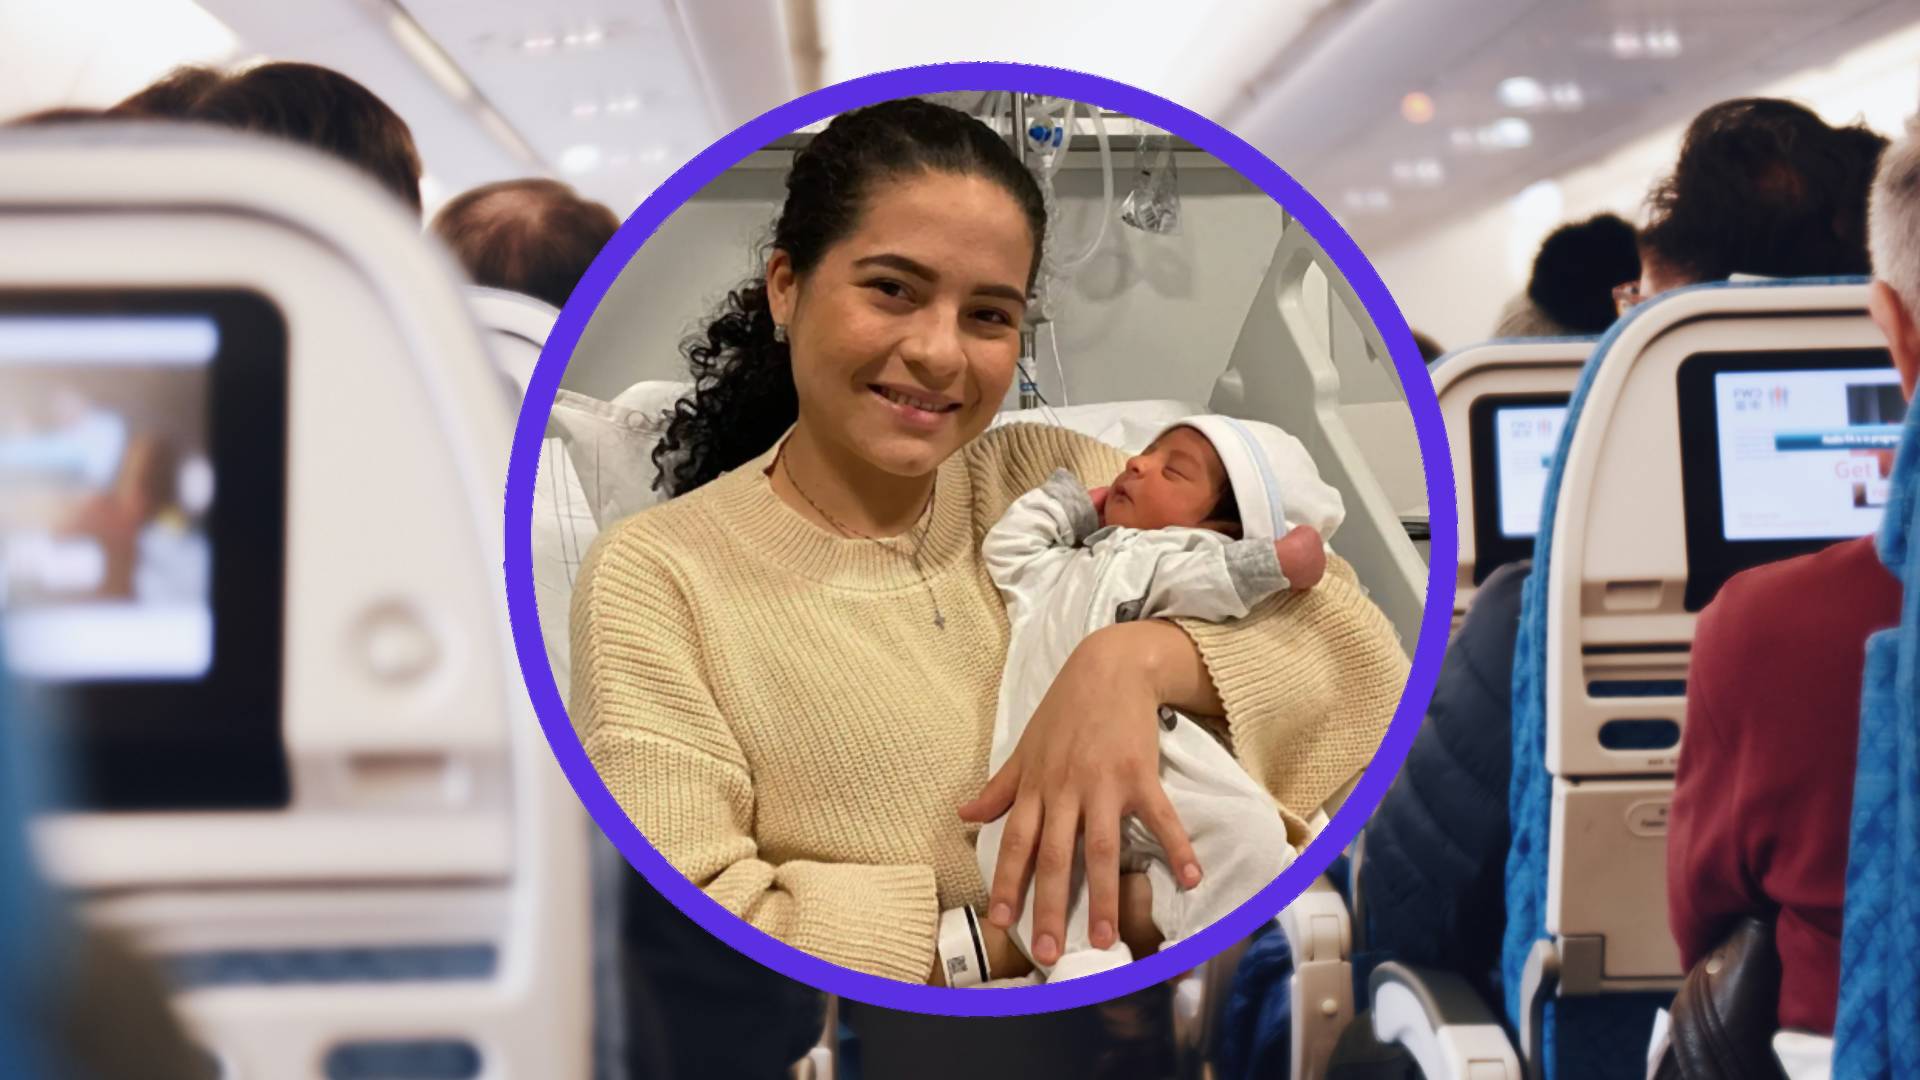 Pasażerka urodziła na pokładzie samolotu. Kobieta nie wiedziała, że jest w ciąży 